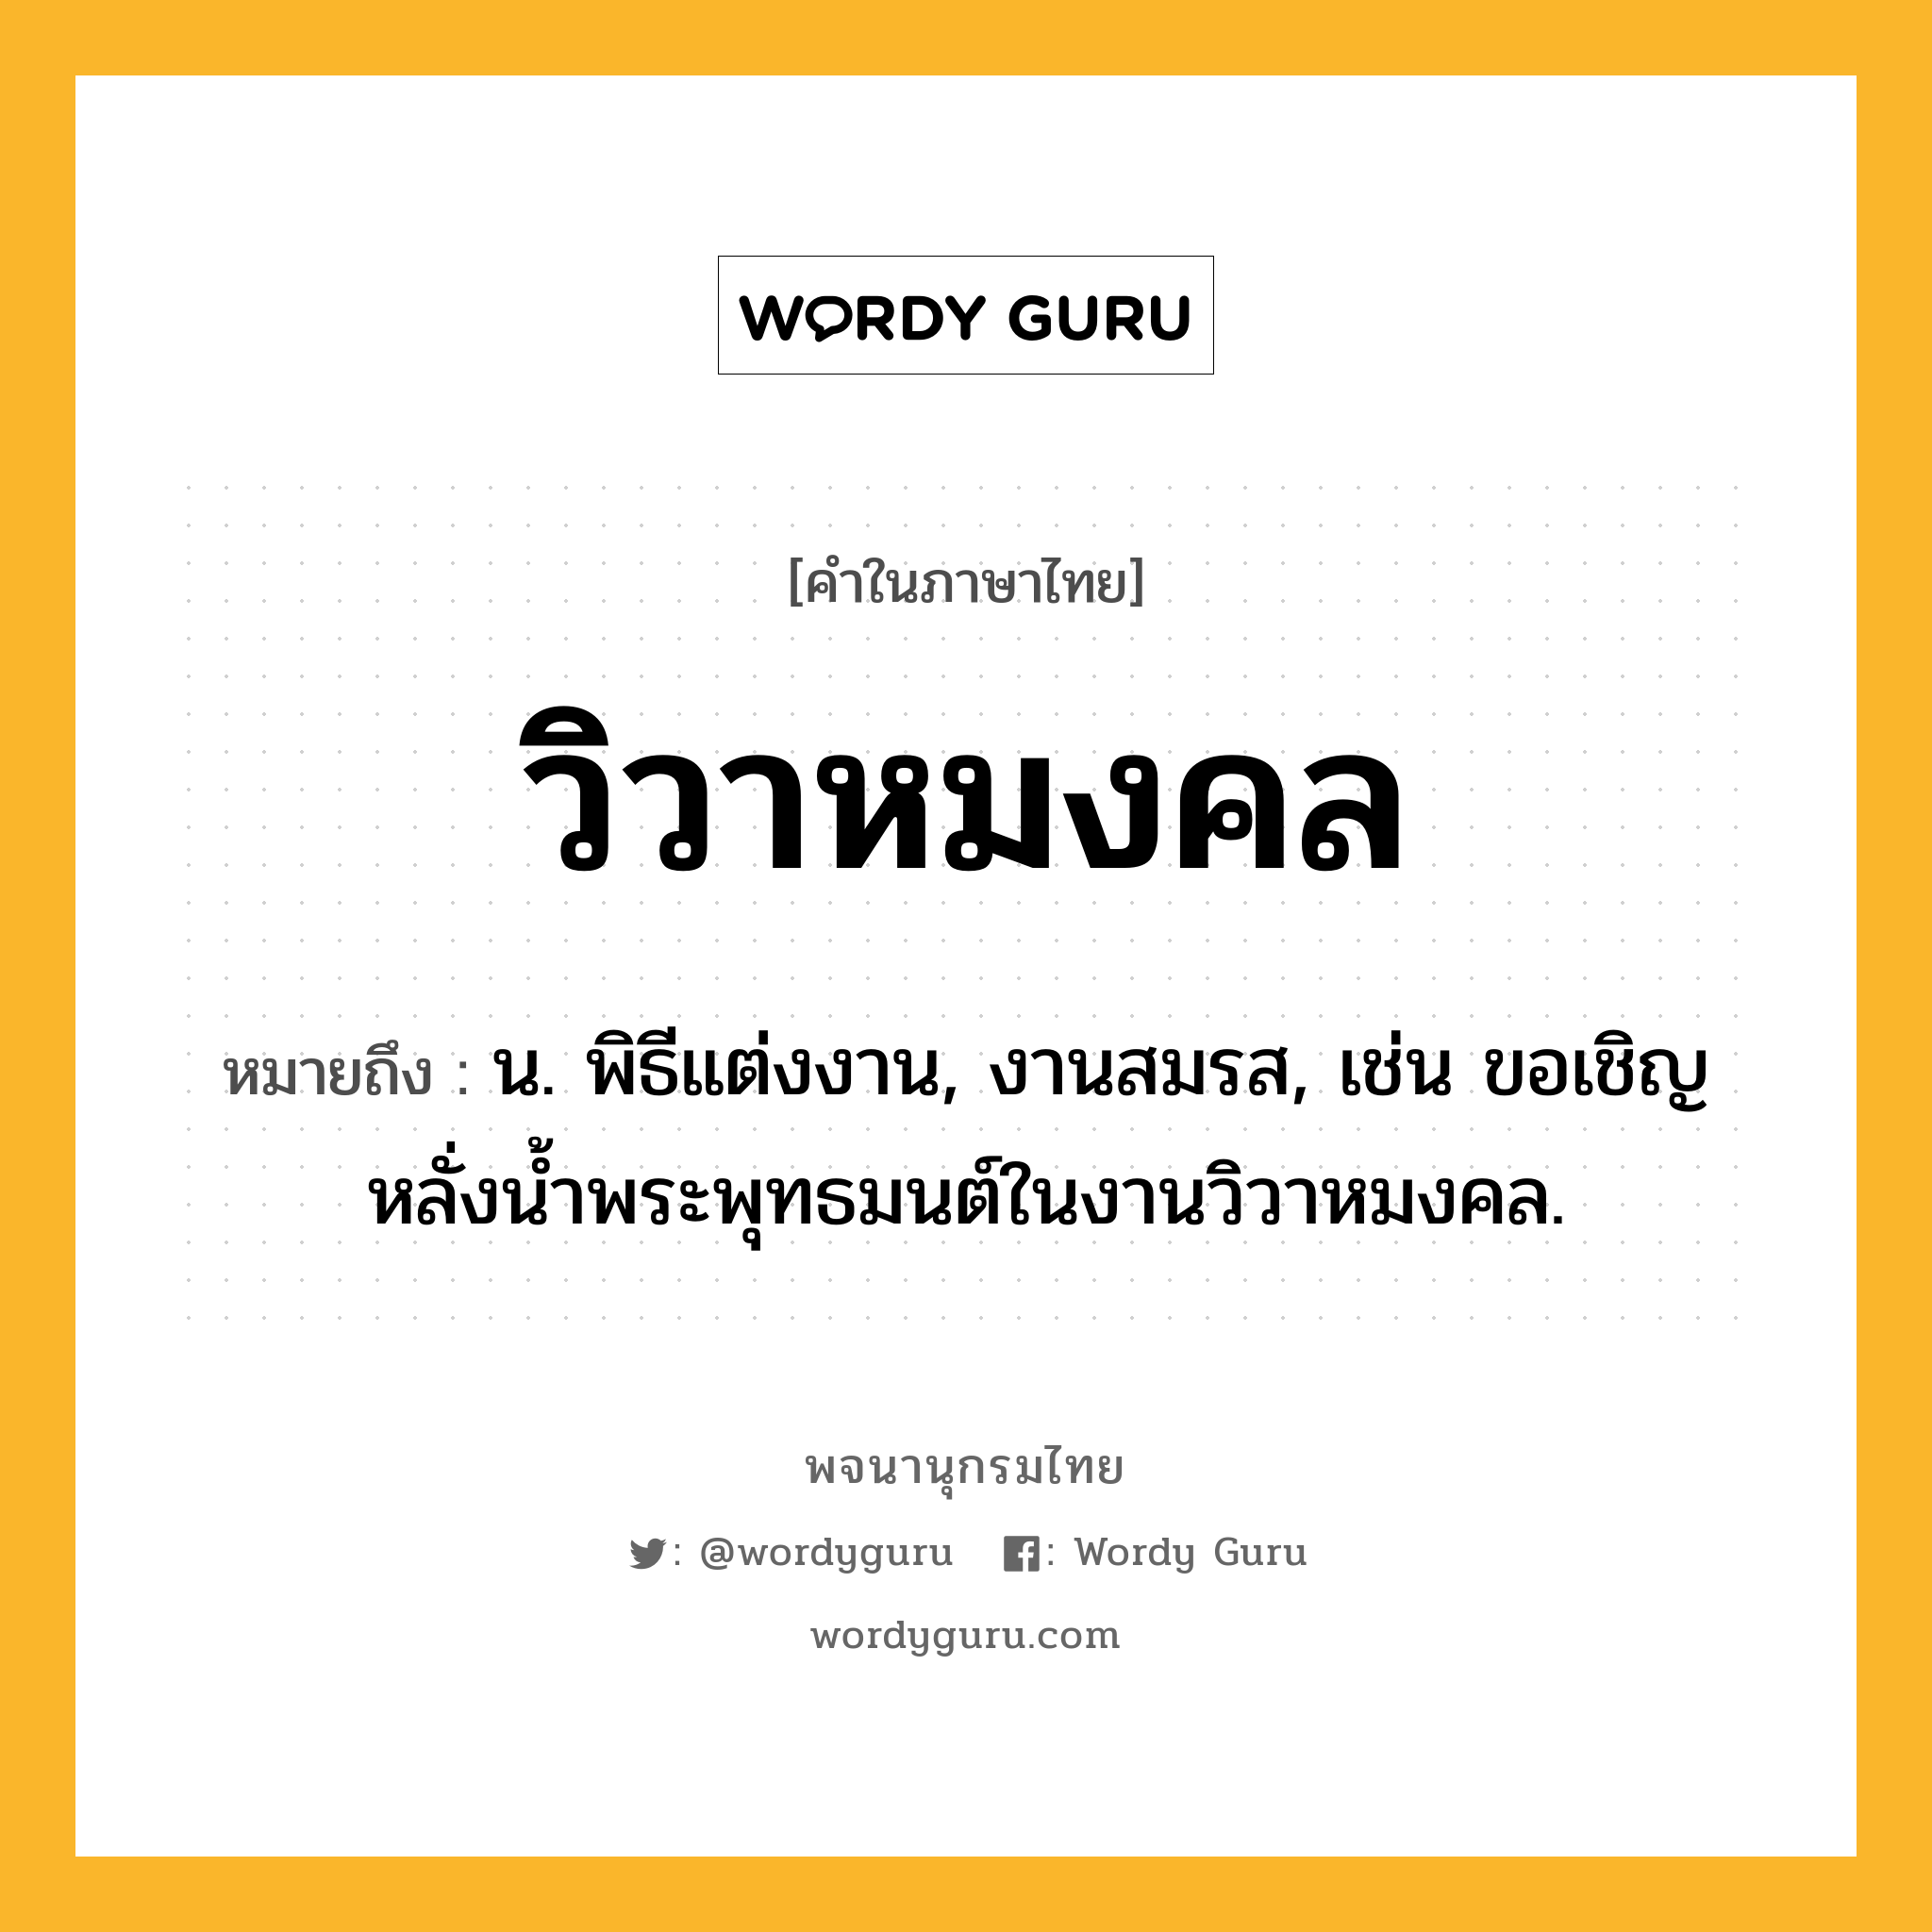 วิวาหมงคล ความหมาย หมายถึงอะไร?, คำในภาษาไทย วิวาหมงคล หมายถึง น. พิธีแต่งงาน, งานสมรส, เช่น ขอเชิญหลั่งน้ำพระพุทธมนต์ในงานวิวาหมงคล.